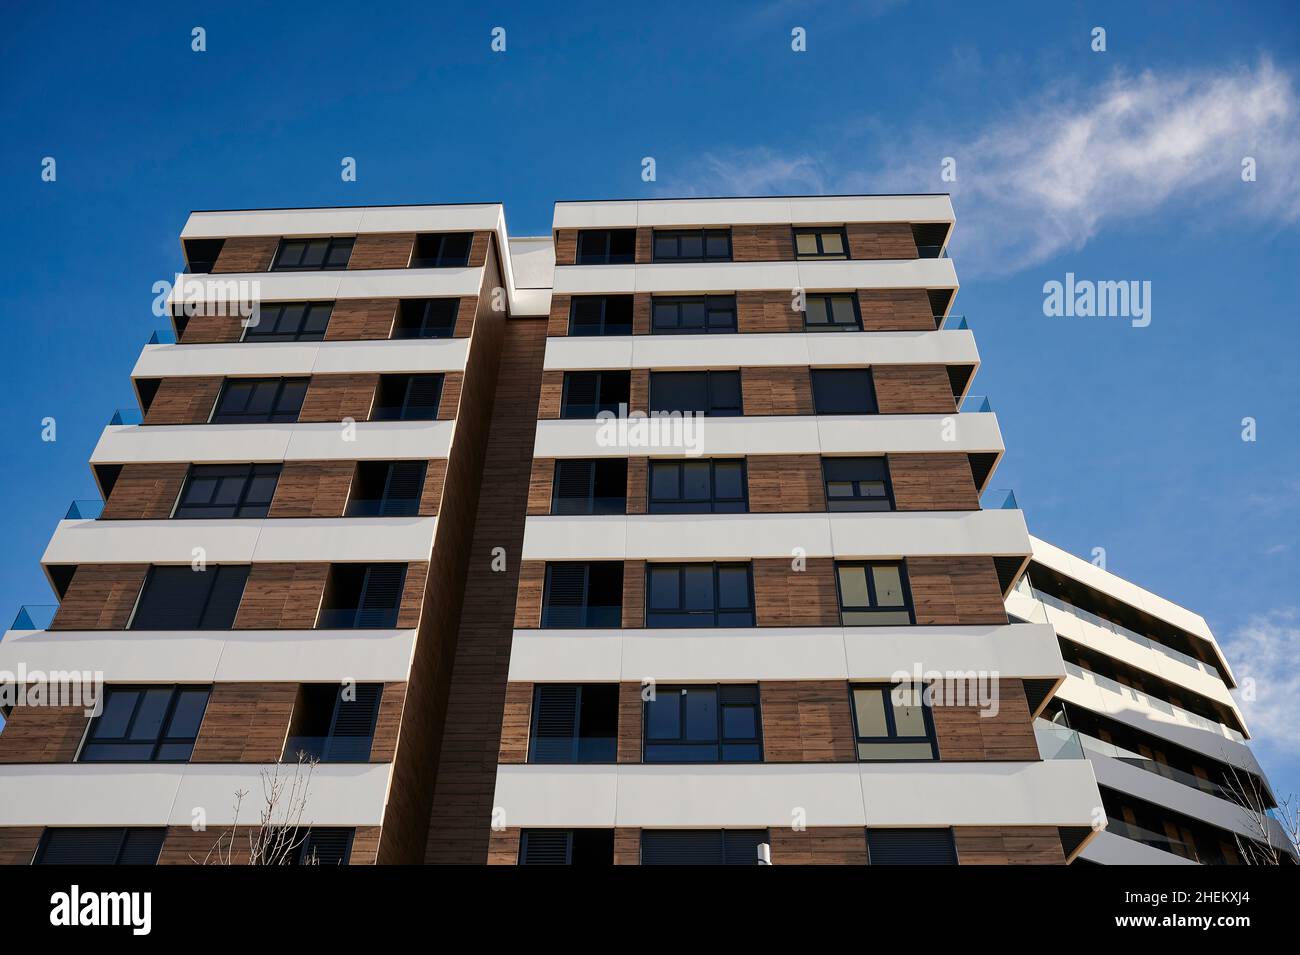 Bâtiment moderne avec façade aérée contre un ciel bleu avec des nuages, Bilbao, pays basque, Espagne Banque D'Images